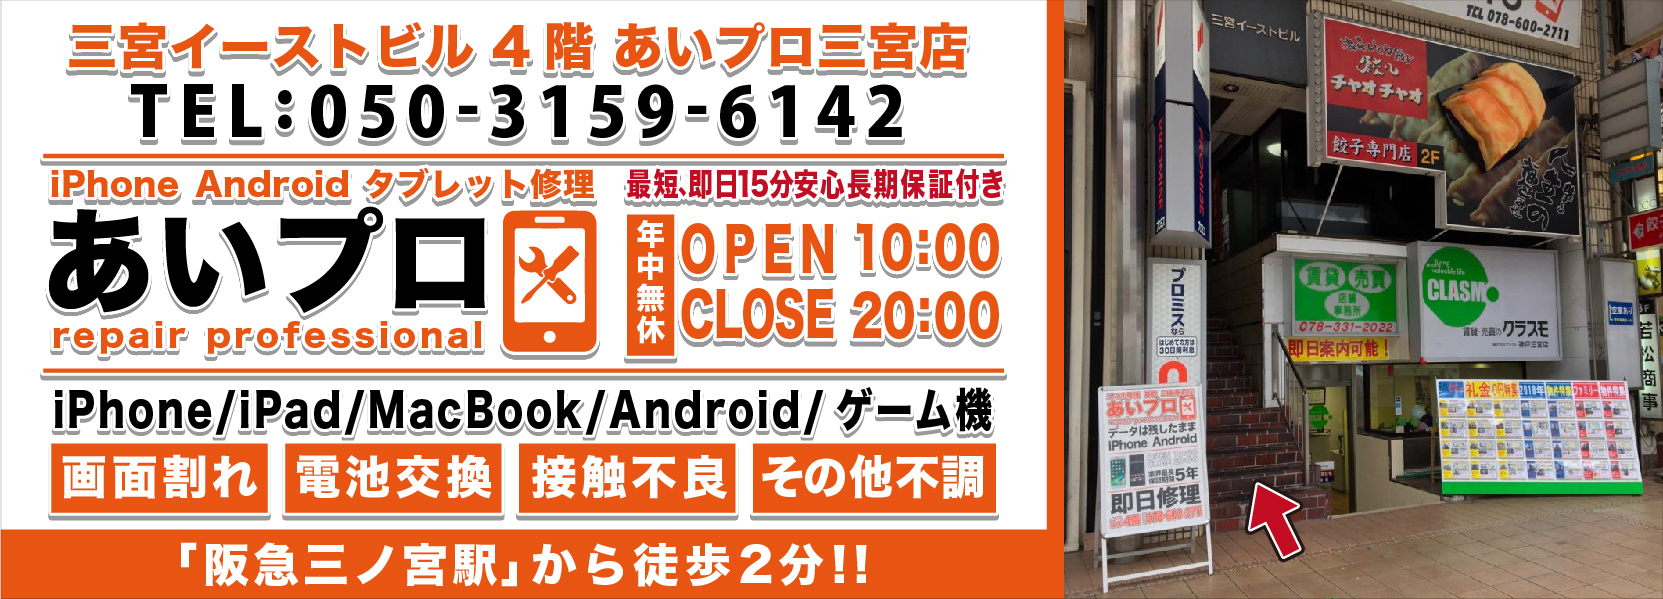 神戸・三宮駅前店 Android修理料金表 メインビジュアル 1